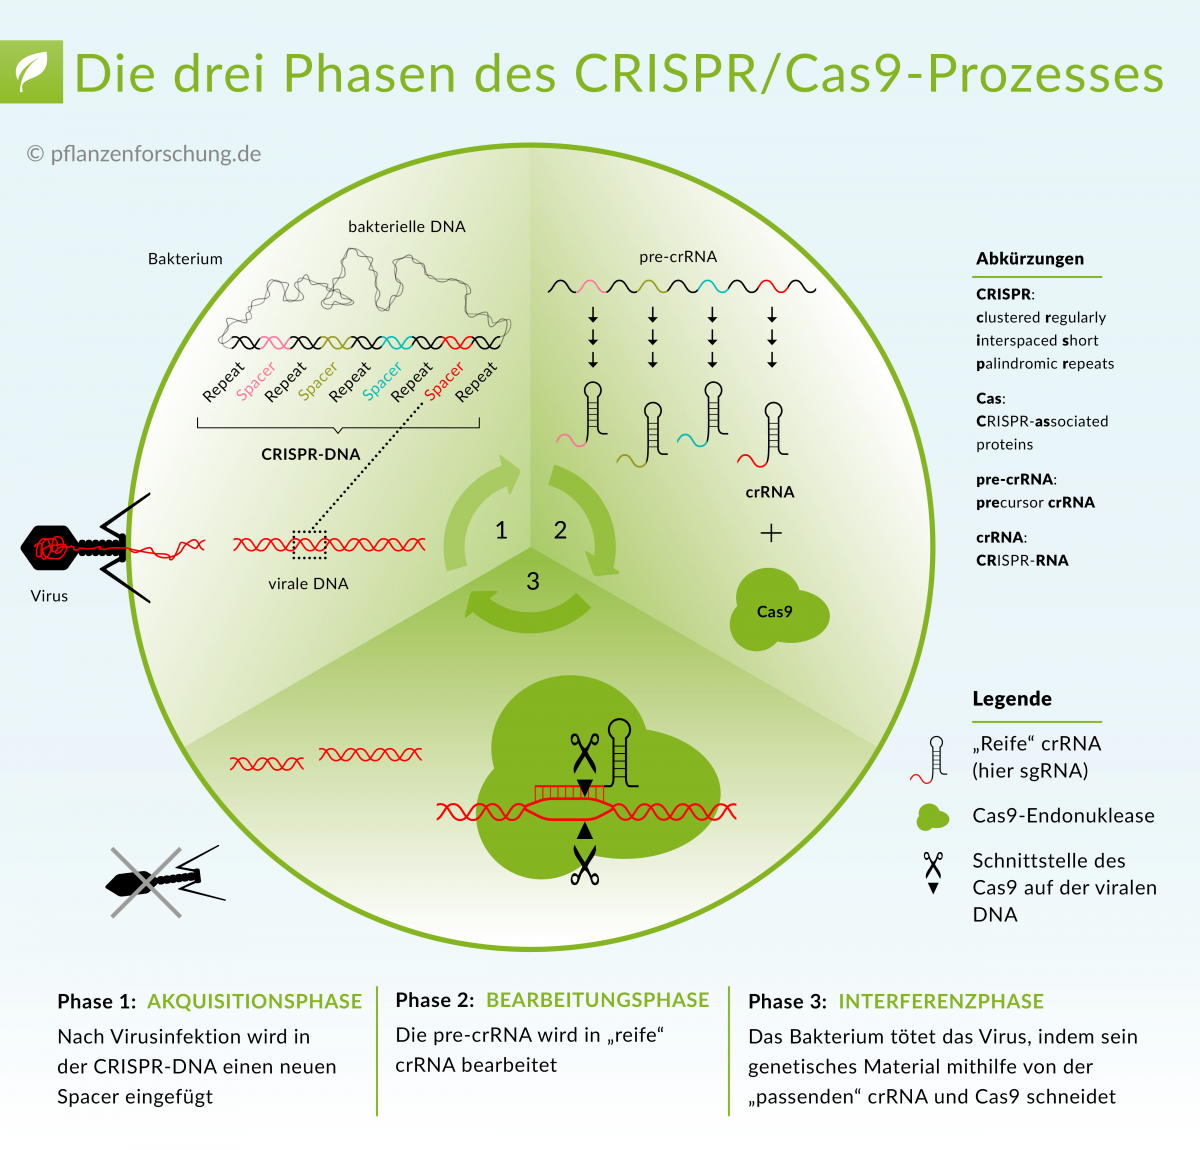 Die CRISPR/Cas-Technologie, die zurzeit in der Forschung und Anwendung Furore macht, basiert auf den besonderen Eigenschaften der RNA. Mehr dazu unter: Wie CRISPR/Cas funktioniert.
